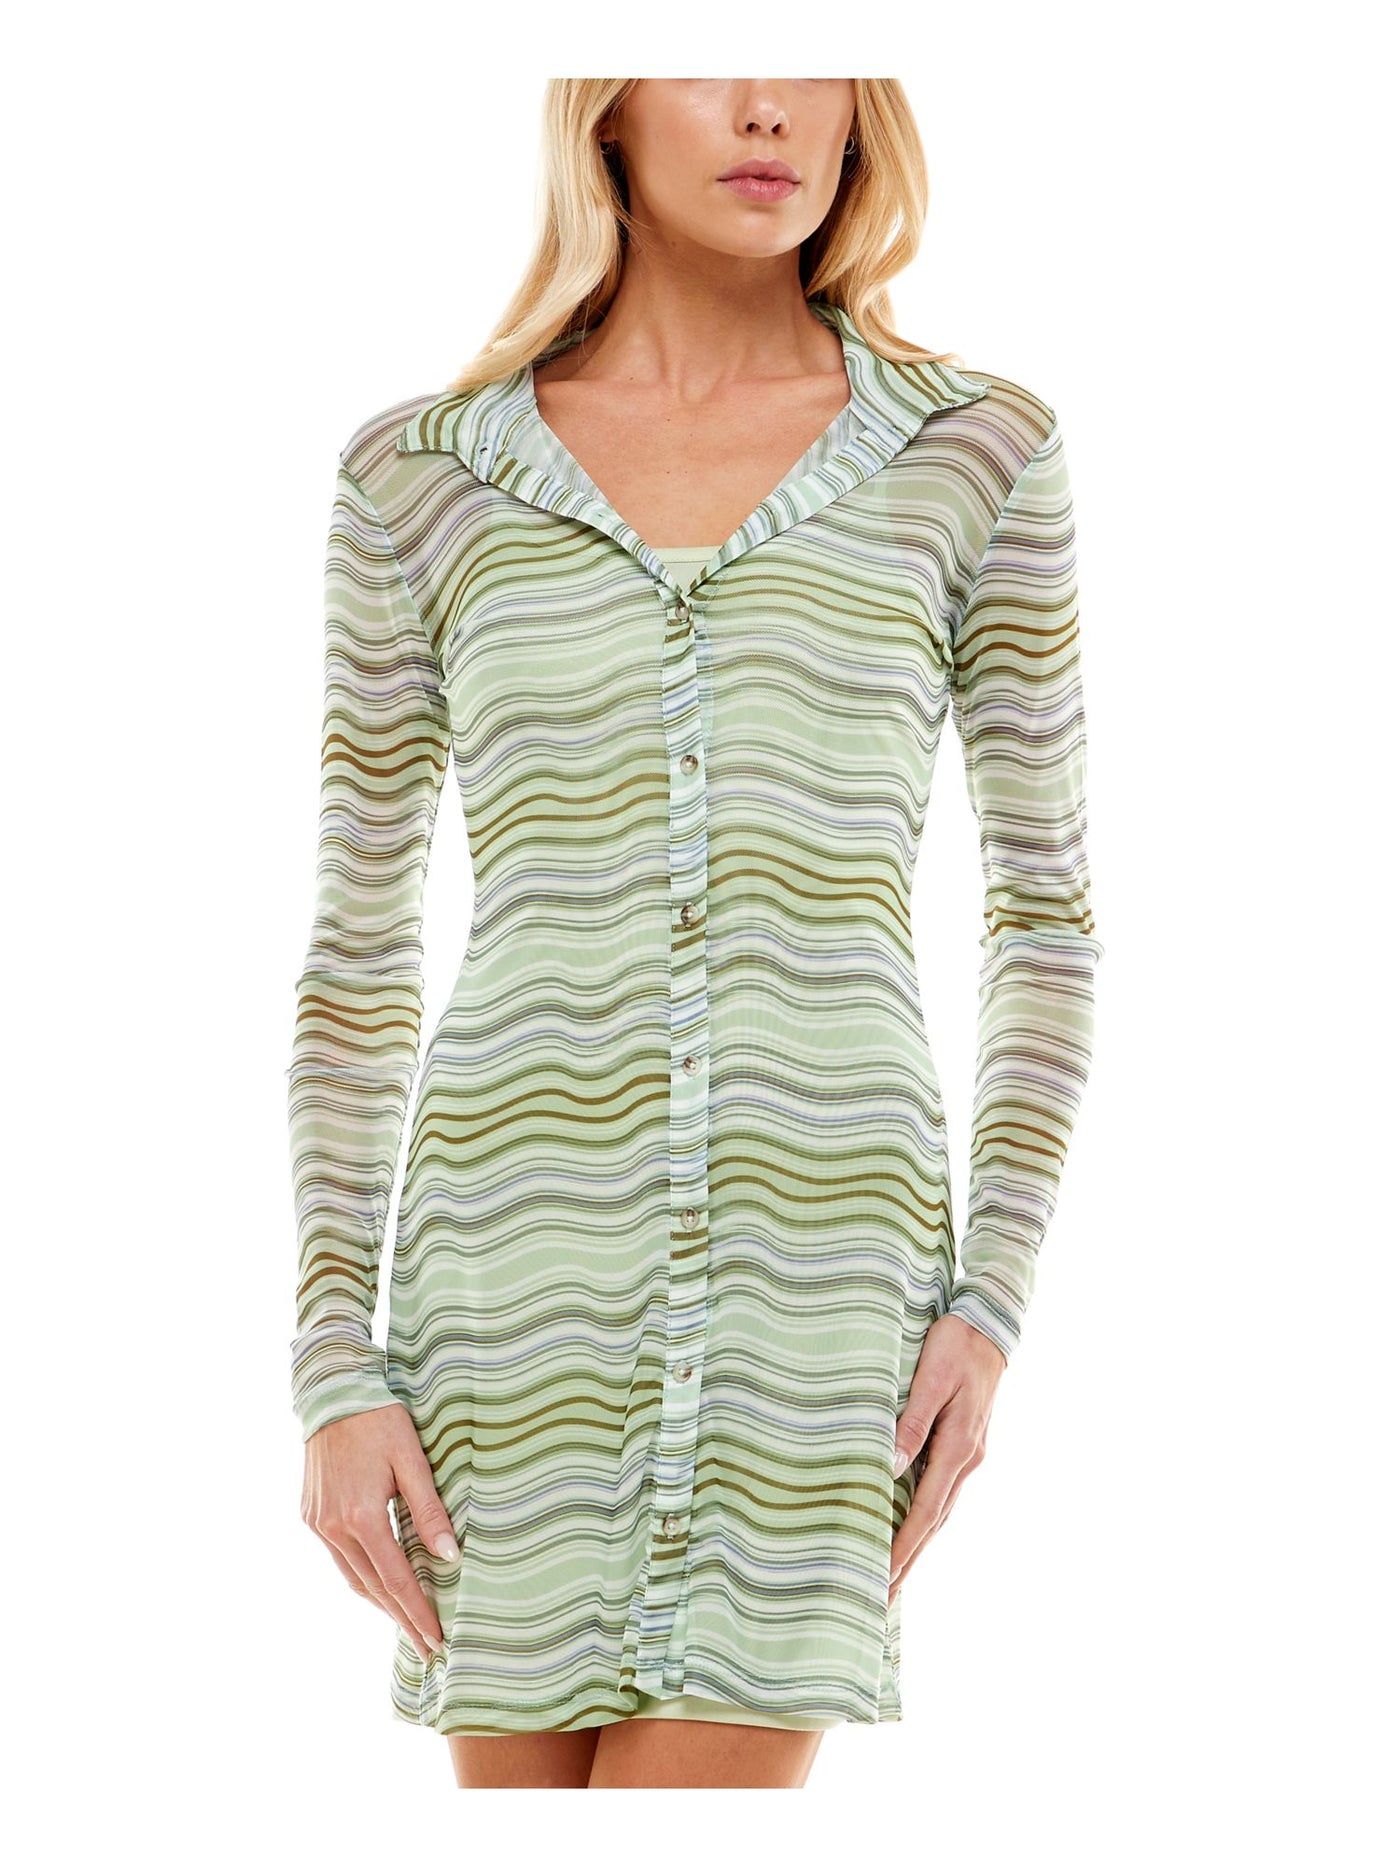 ULTRA FLIRT Womens Green Sheer Lined Overlay Striped Long Sleeve Collared Short Party Shirt Dress Juniors M